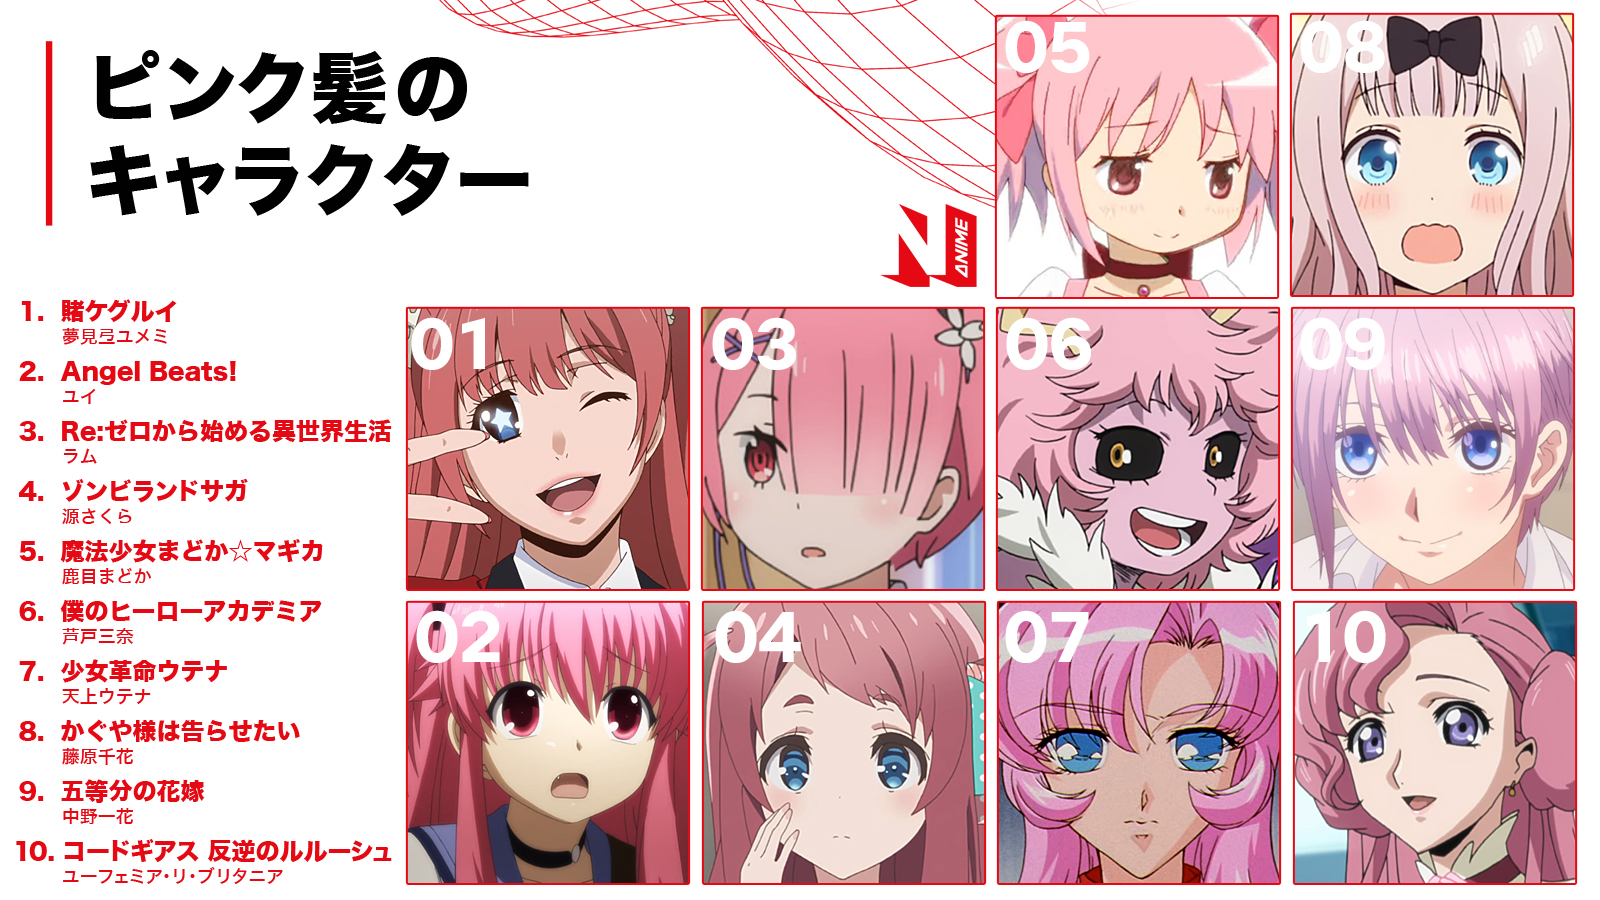 Netflix Japan Anime Twitter પર ネトフリ で配信中のアニメから ピンク髪のキャラクターをピックアップ あなたの 推しピンク髪 キャラは誰 ネトフリアニメ T Co Tztuqpc8dy Twitter